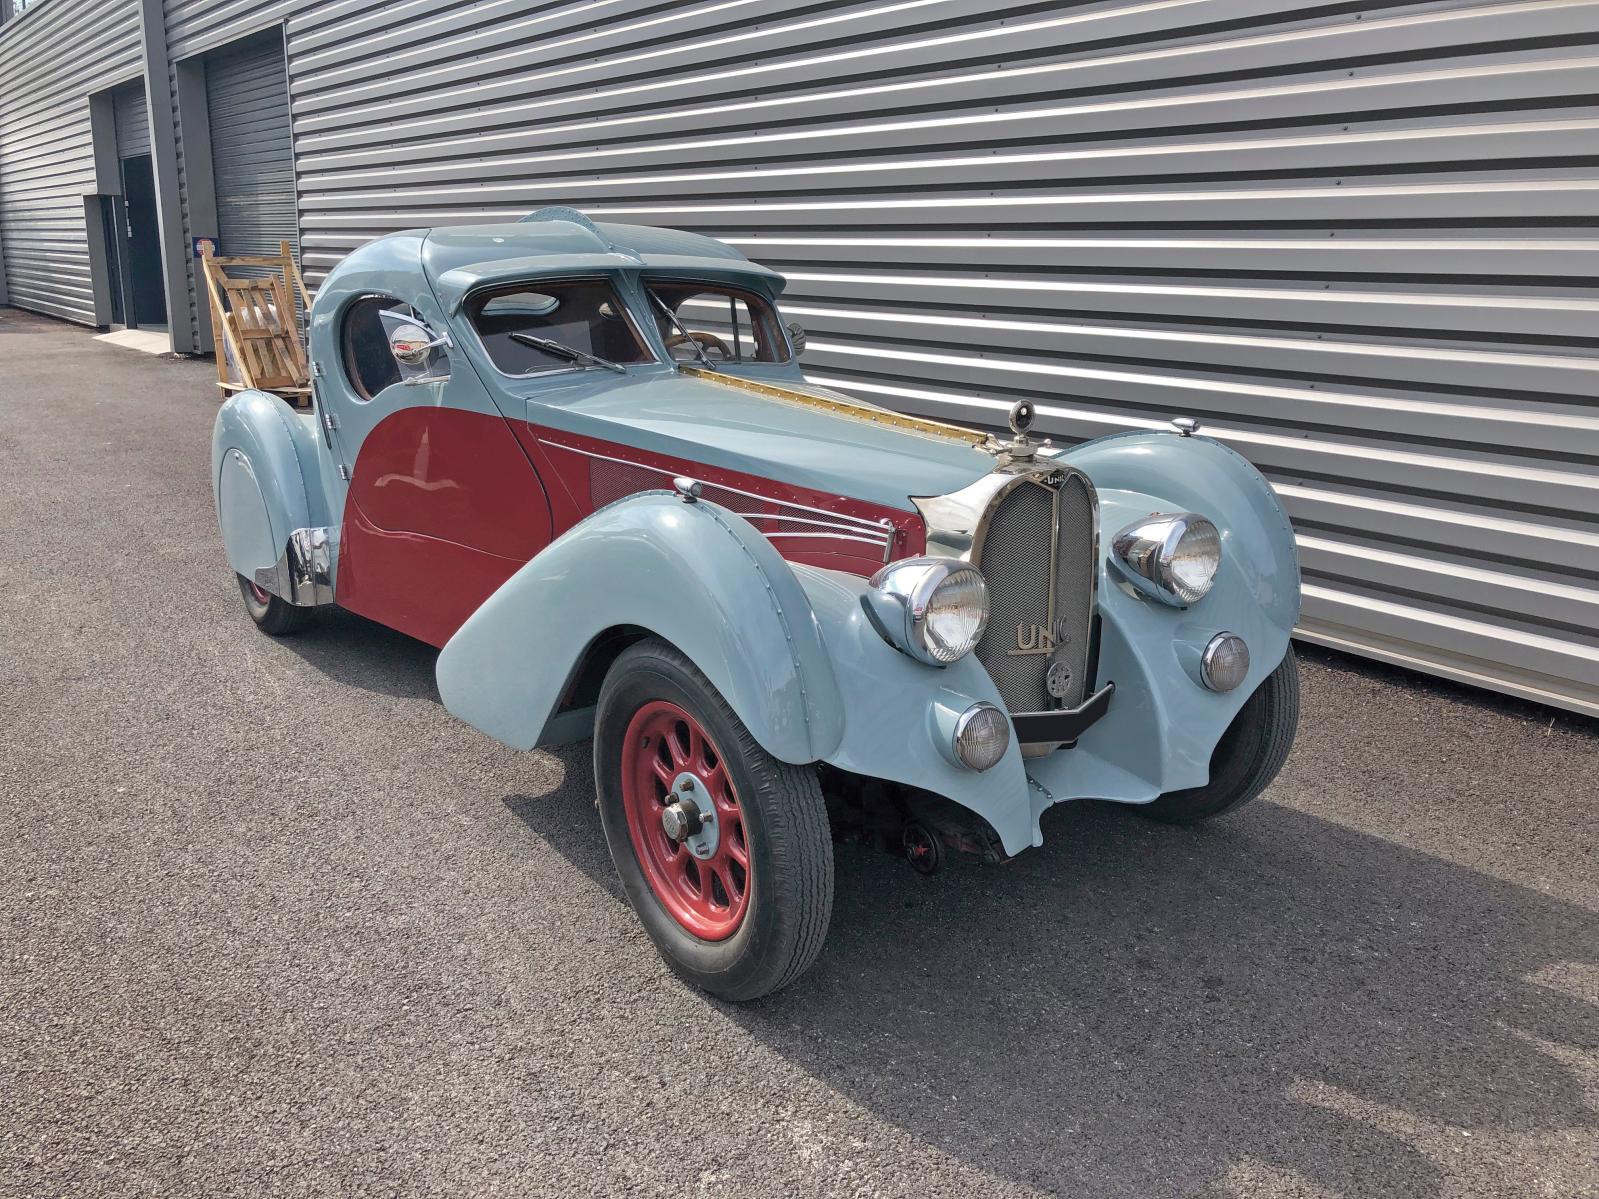 La Bugatti 57 Atlantic Evocation est le résultat d’un patient travail mené par un passionné… Sur le châssis d’une automobile Unic de 1931,